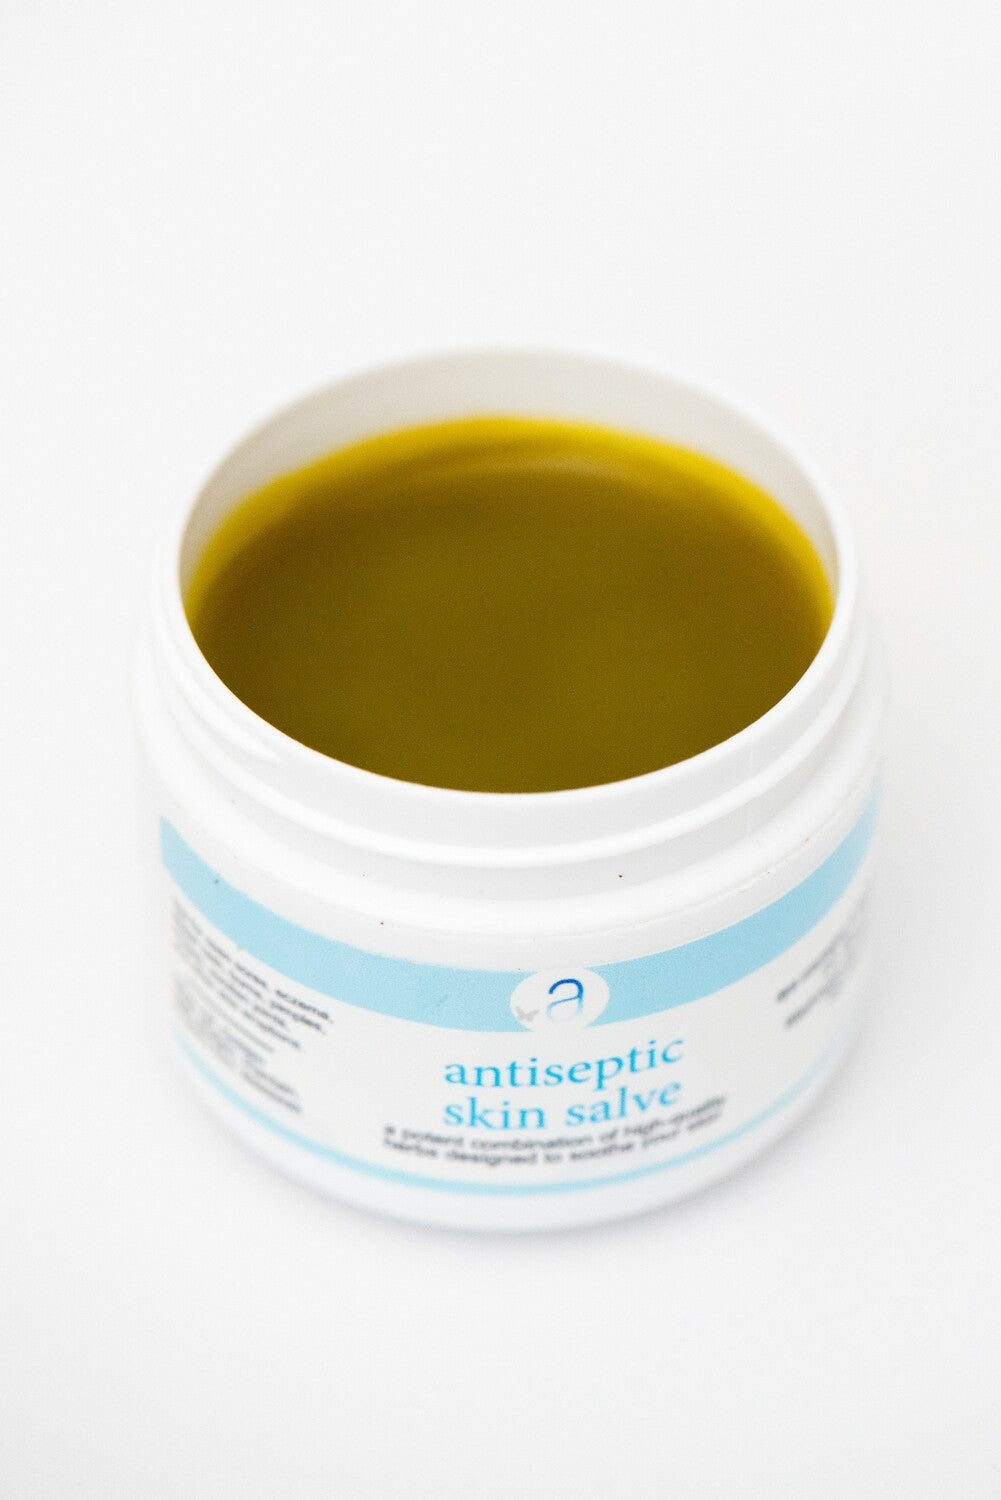 Herbal antiseptic skin salve Washington